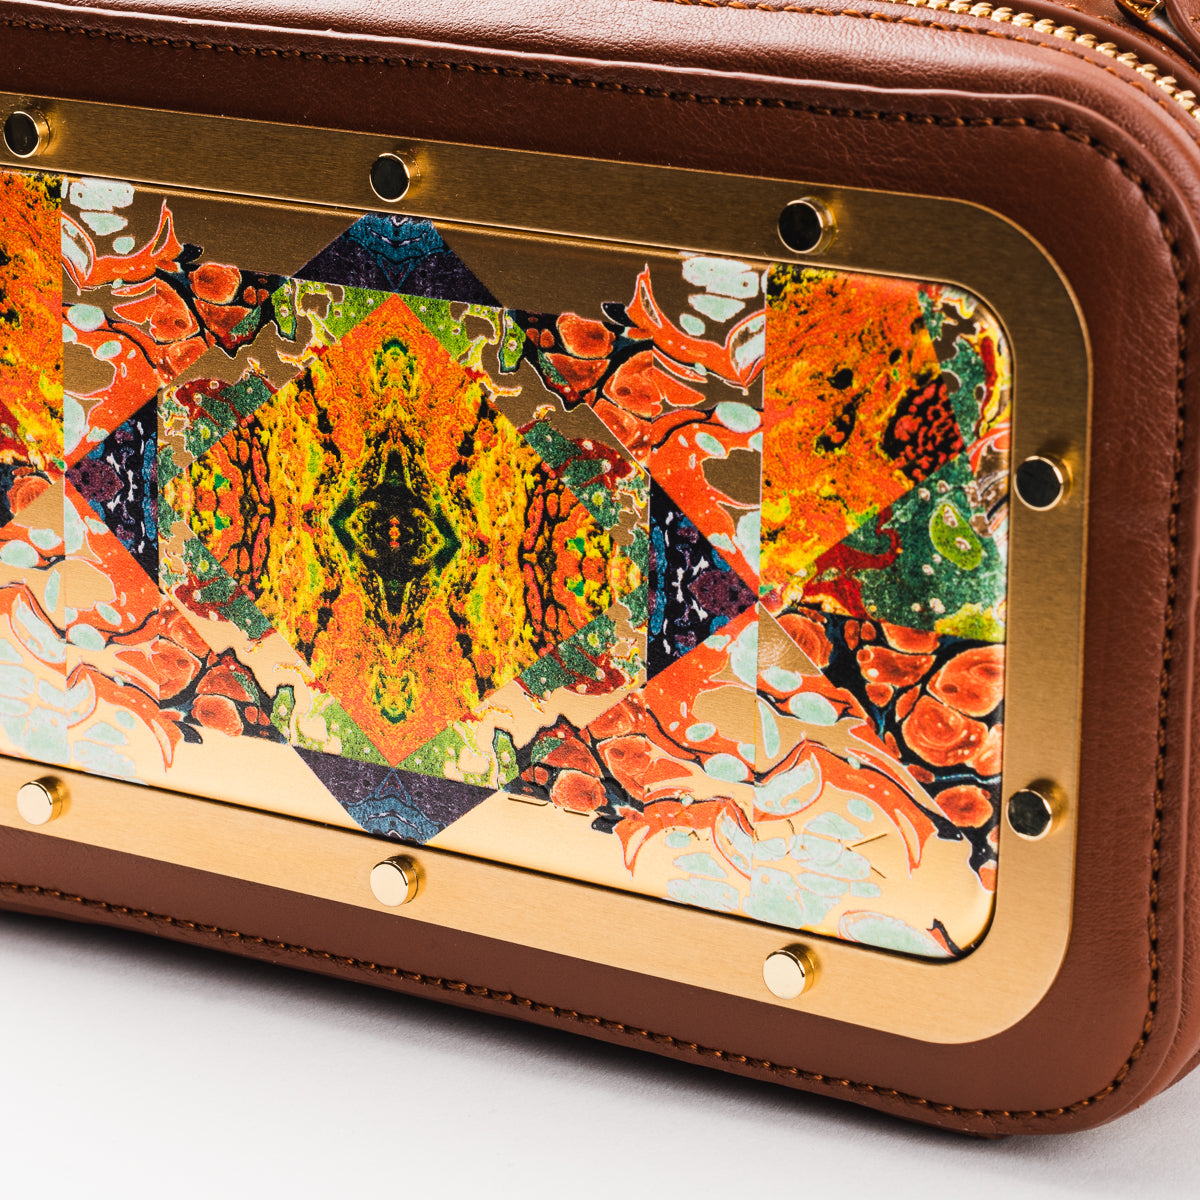 Maera bag with Mosaik art - Brown